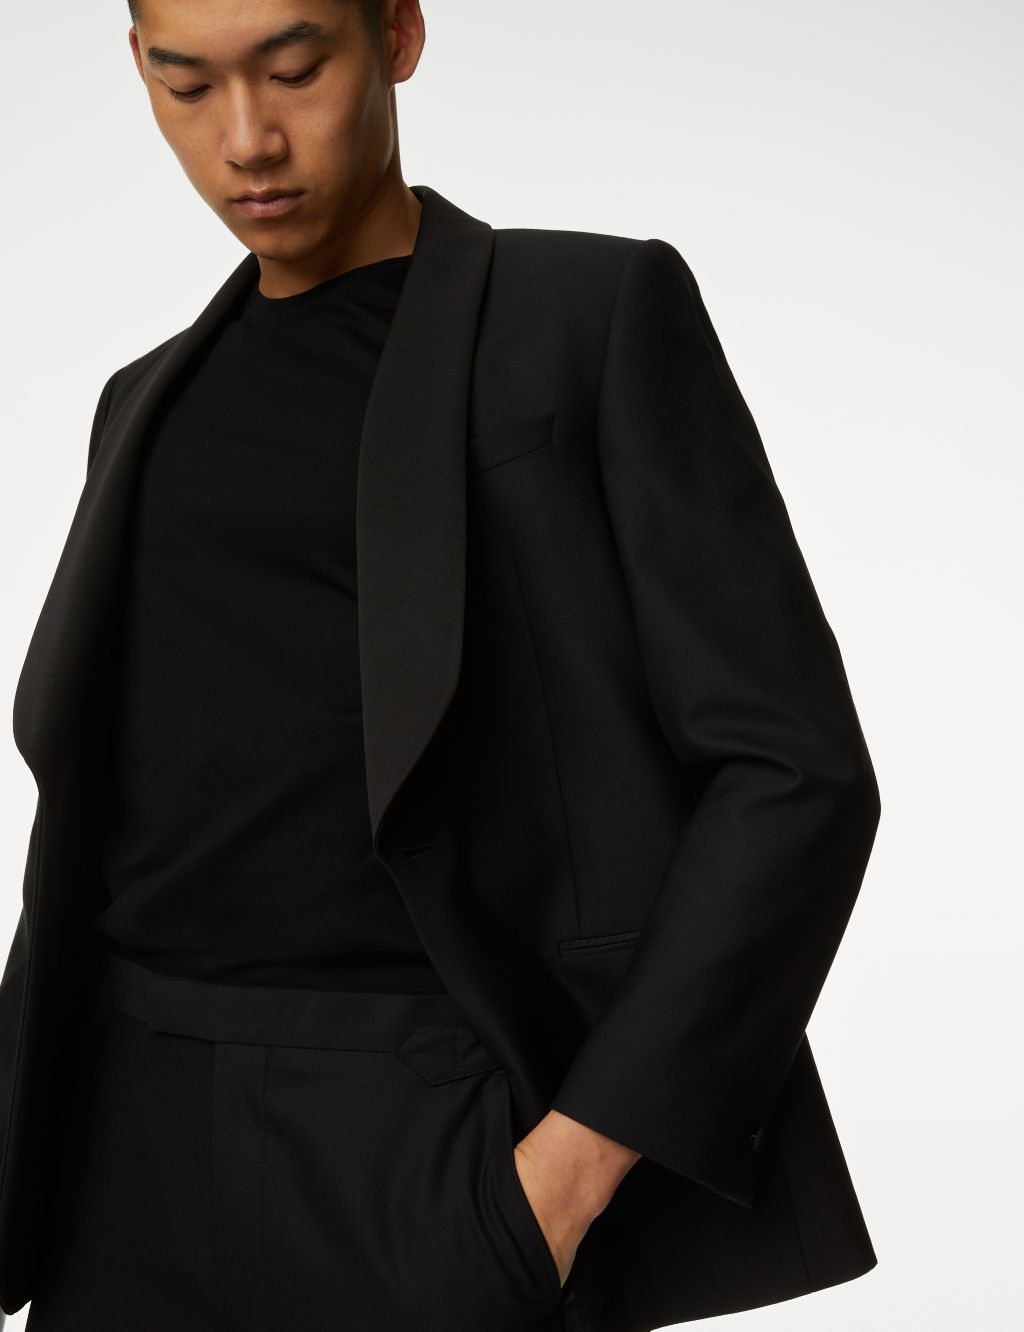 Buy HERE&NOW Men Black Solid Regular Fit Smart Casual Blazer